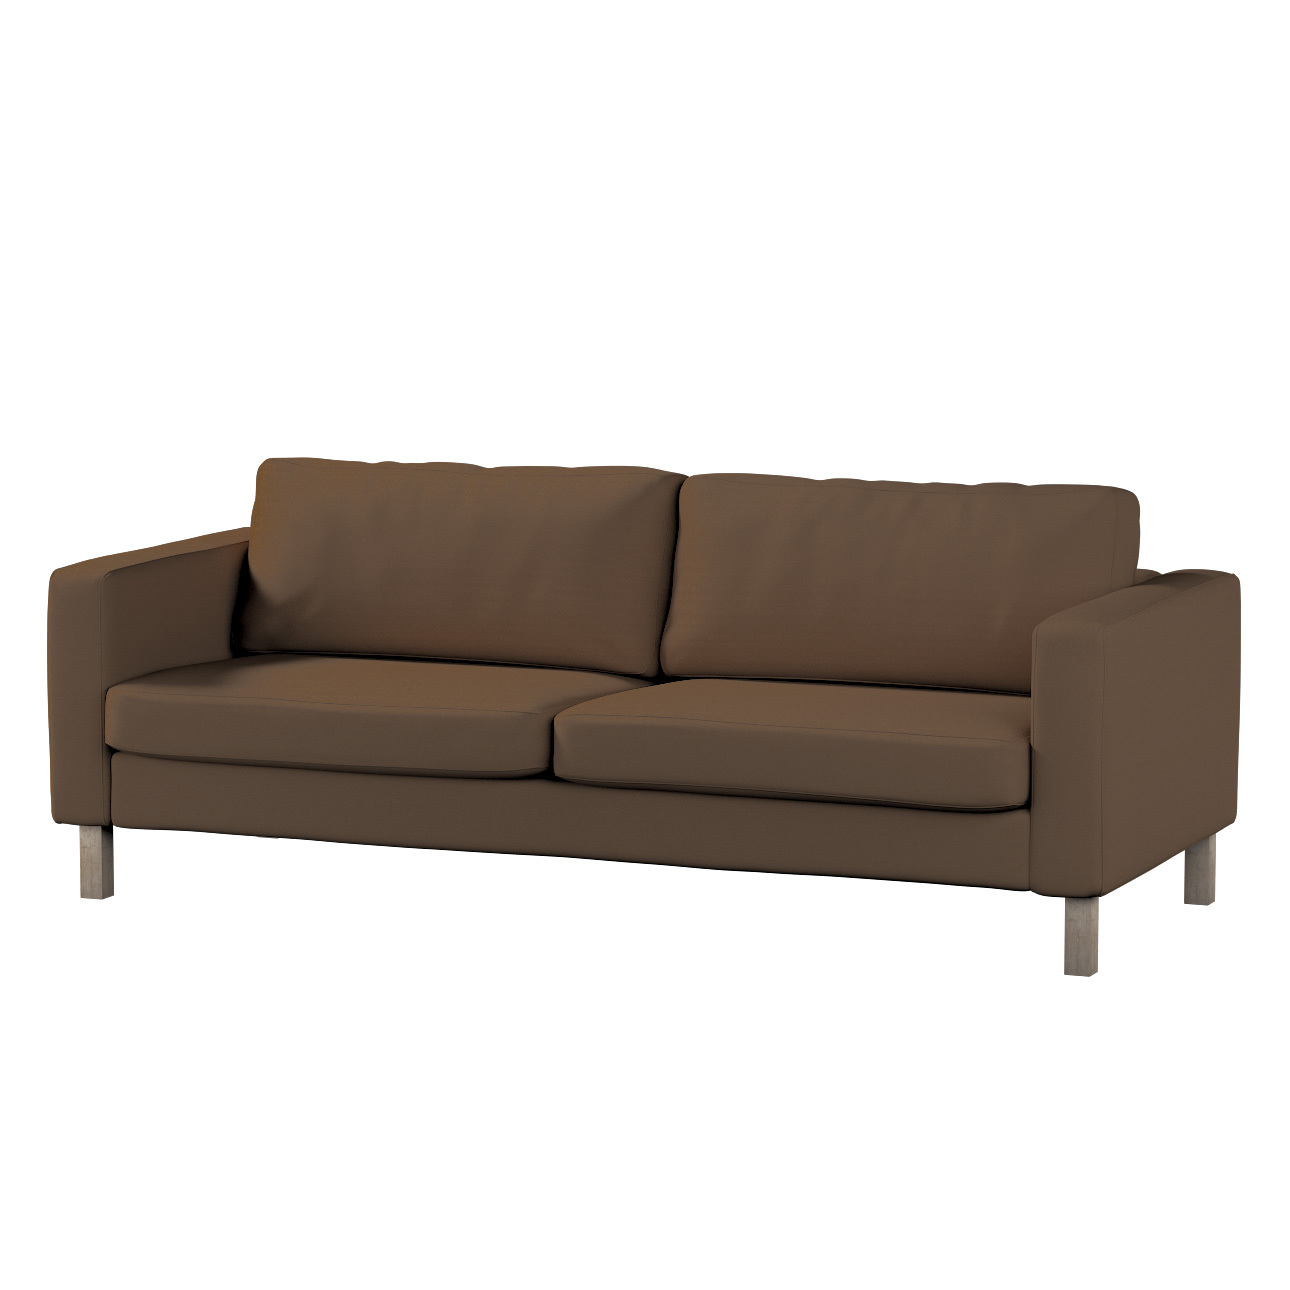 Bezug für Karlstad 3-Sitzer Sofa nicht ausklappbar, kurz, mocca, Bezug für günstig online kaufen